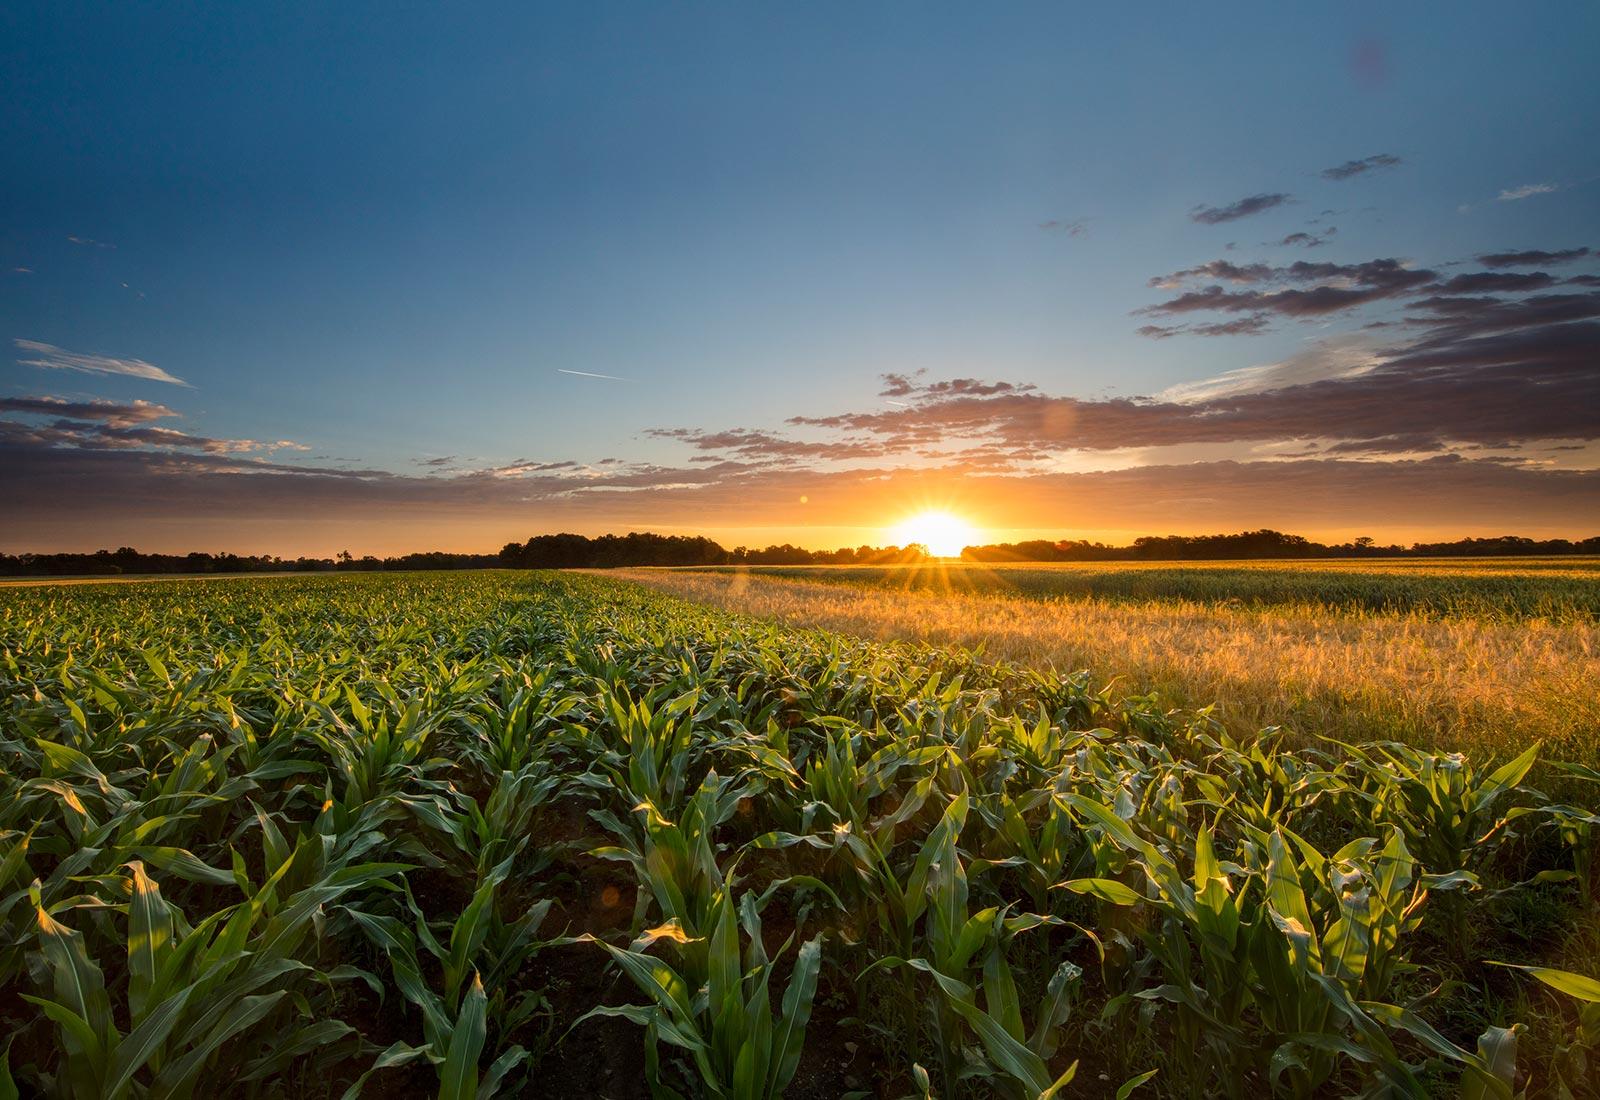 corn farm at sunset